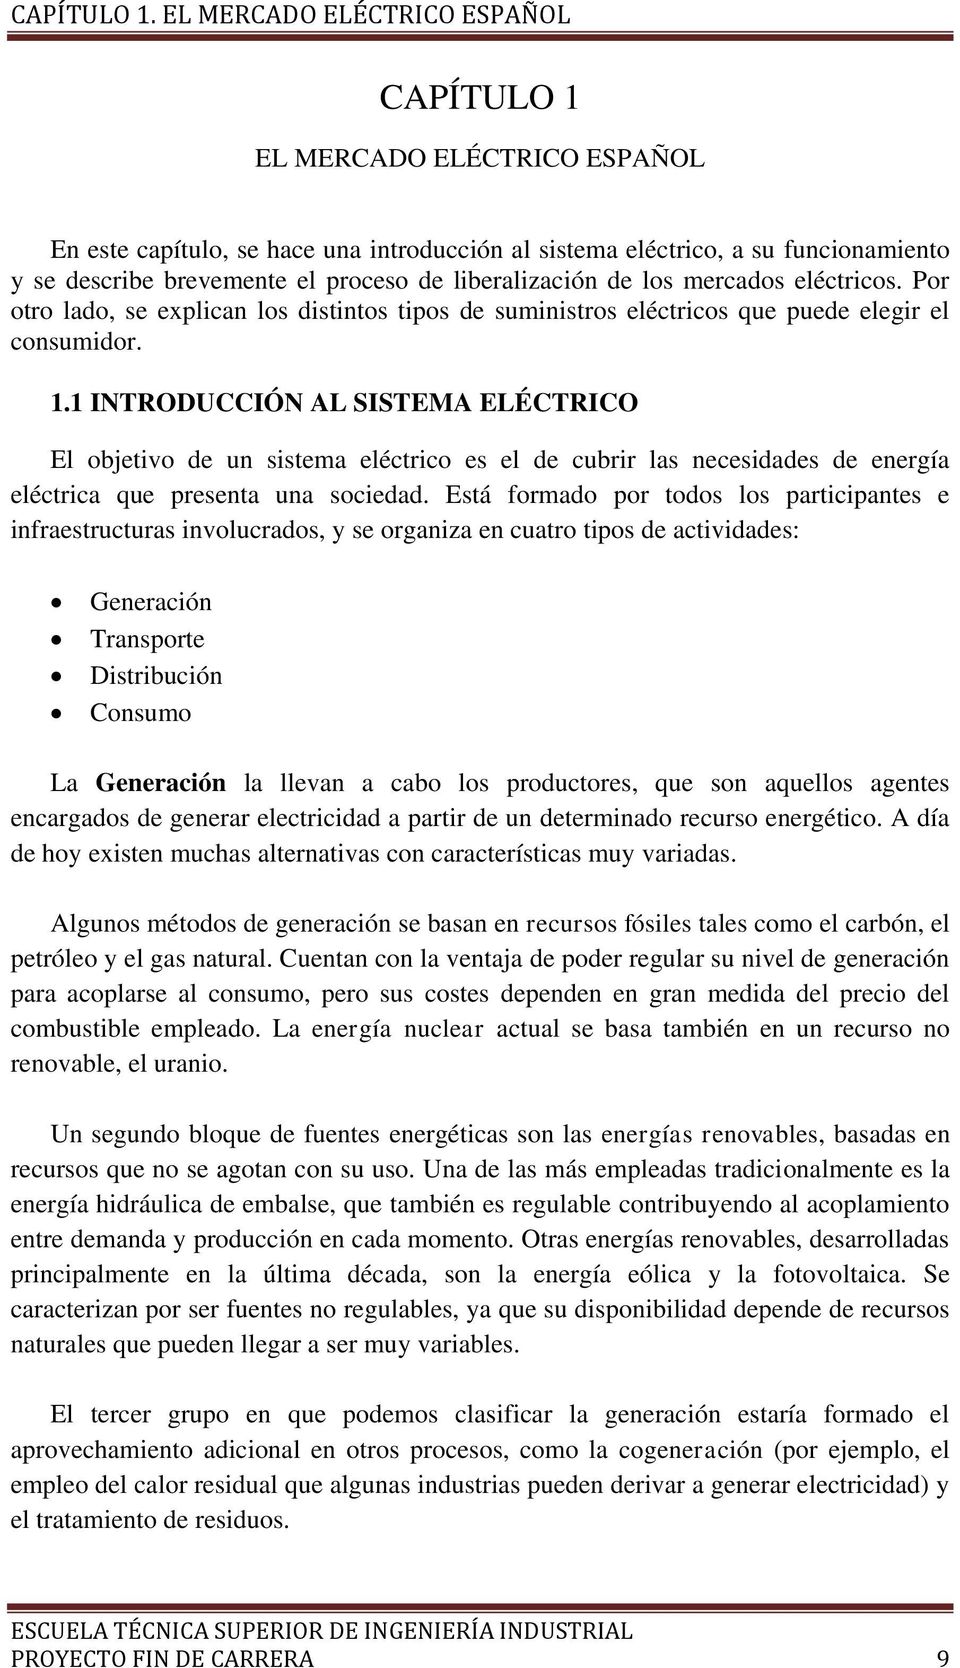 liberalización de los mercados eléctricos. Por otro lado, se explican los distintos tipos de suministros eléctricos que puede elegir el consumidor. 1.